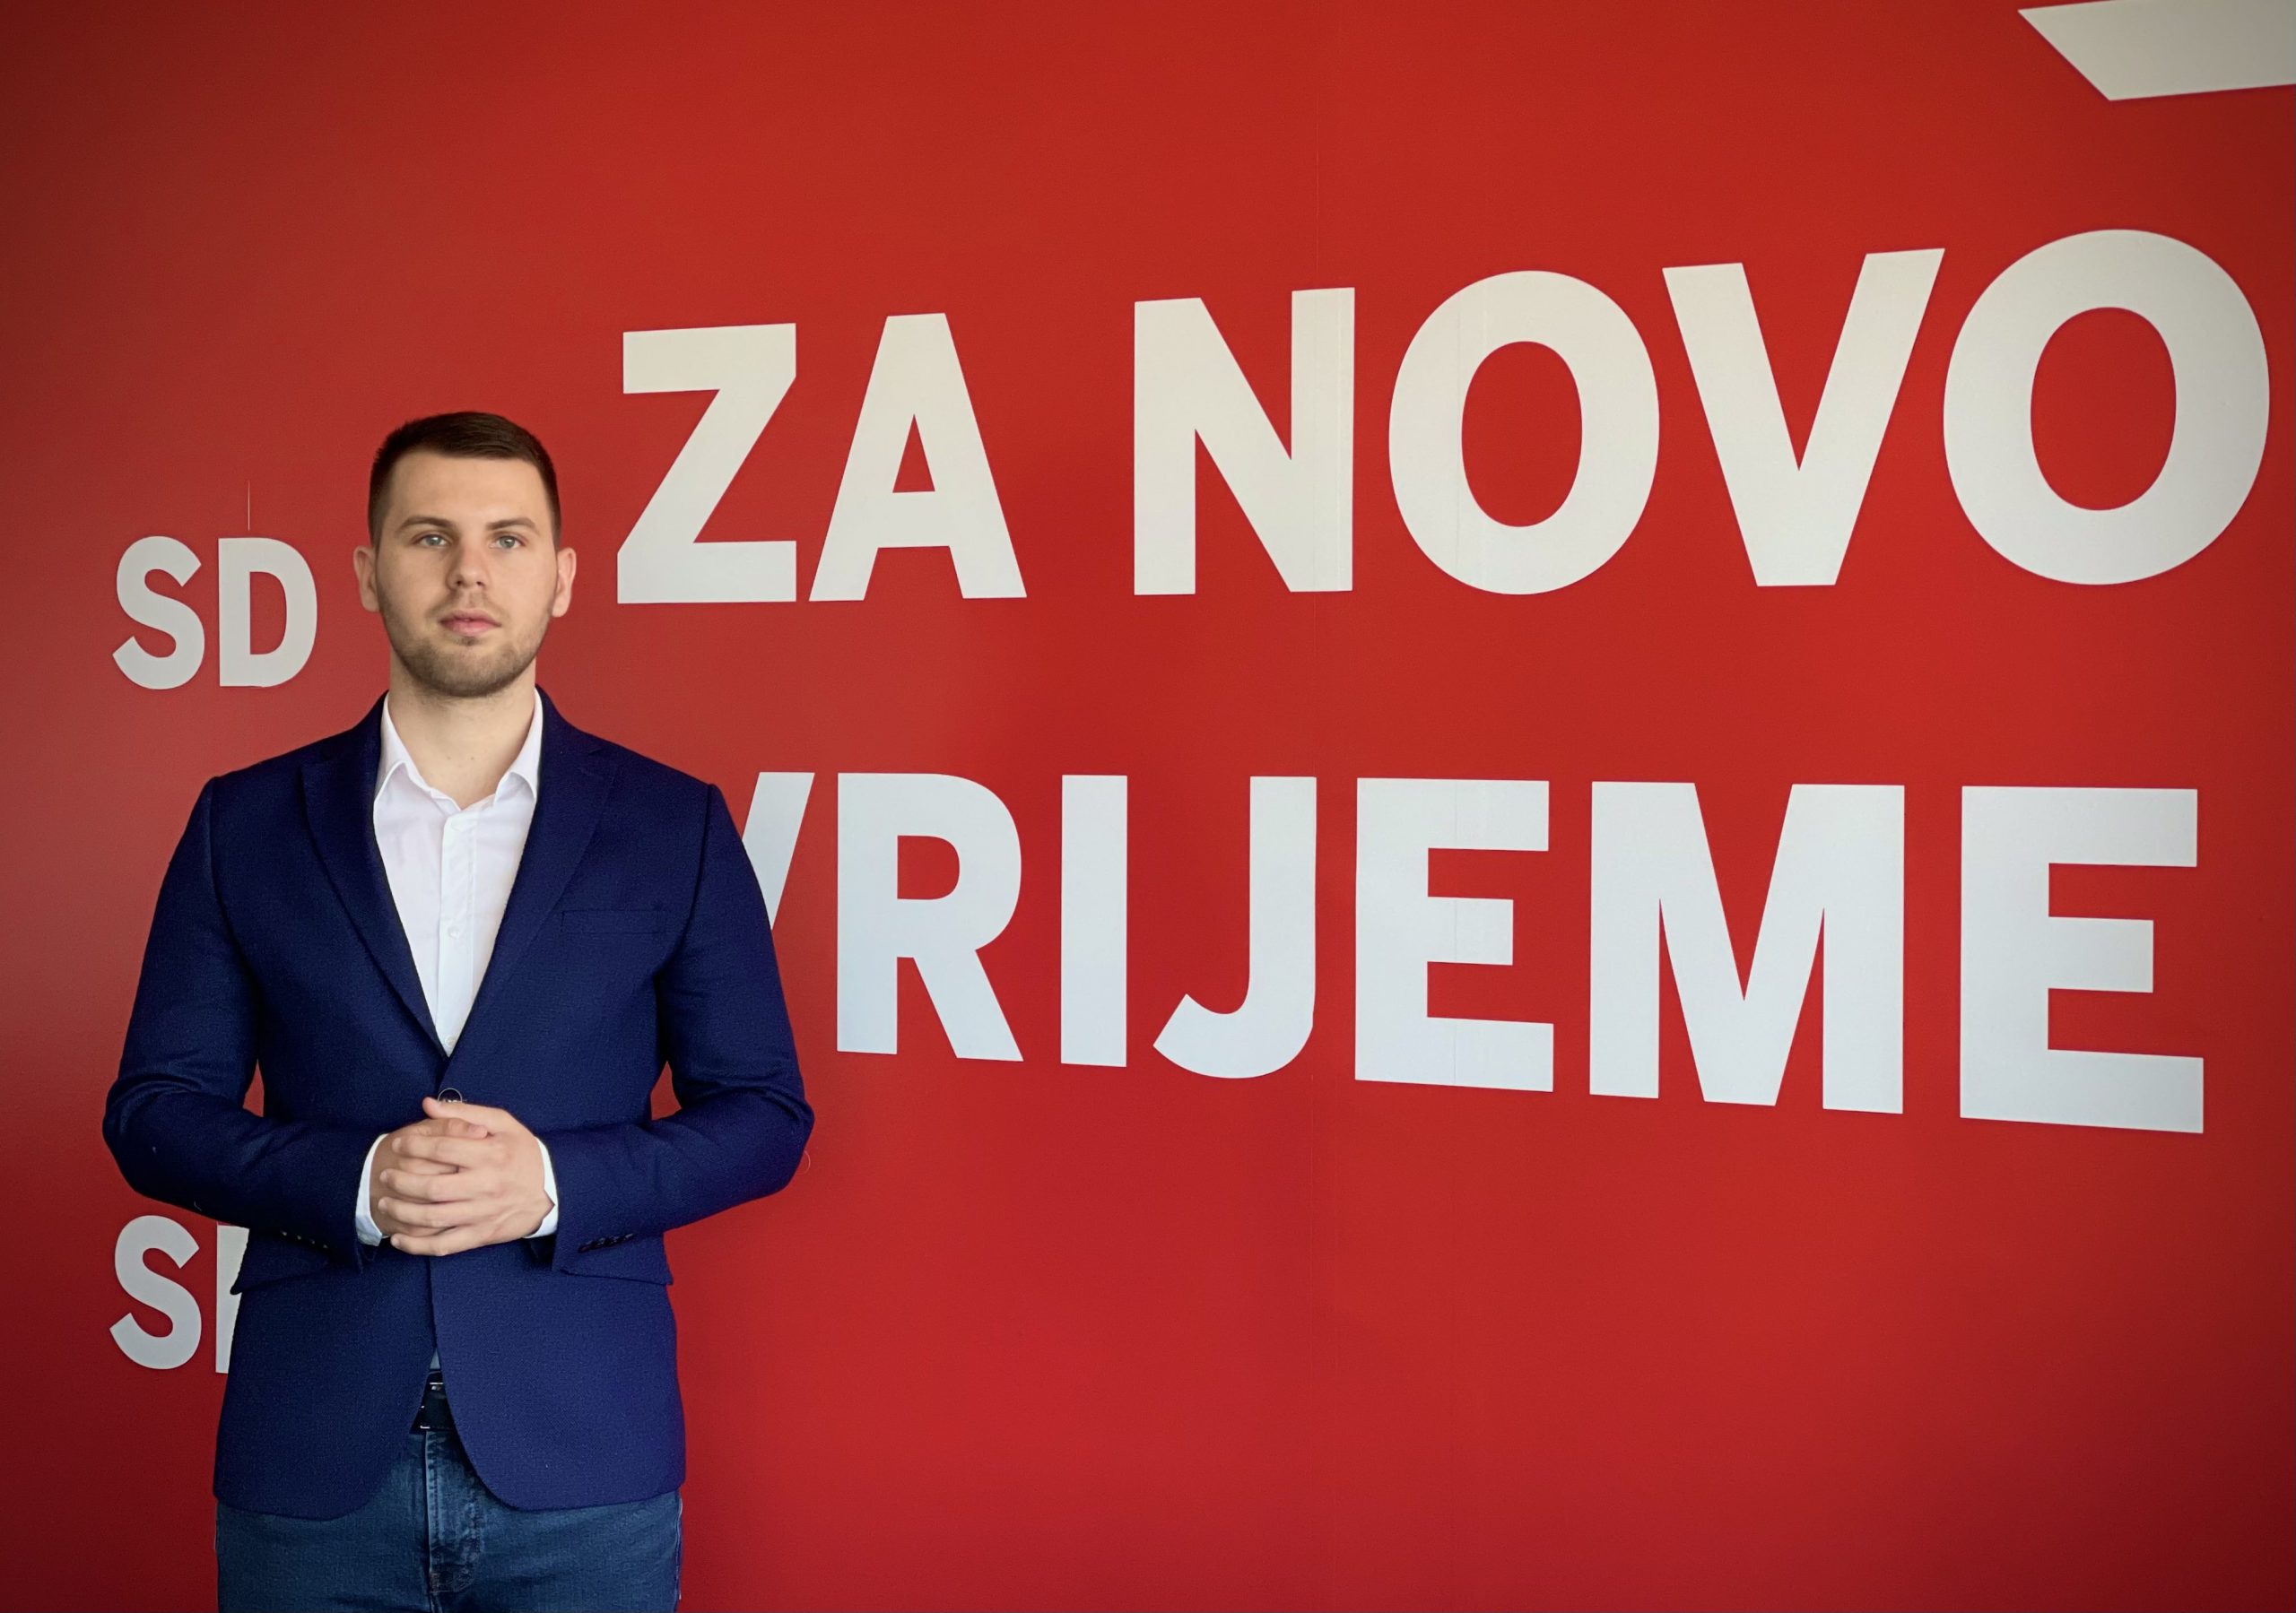 Mašković: Pripravnici ispaštaju dok Vlada krši zakon